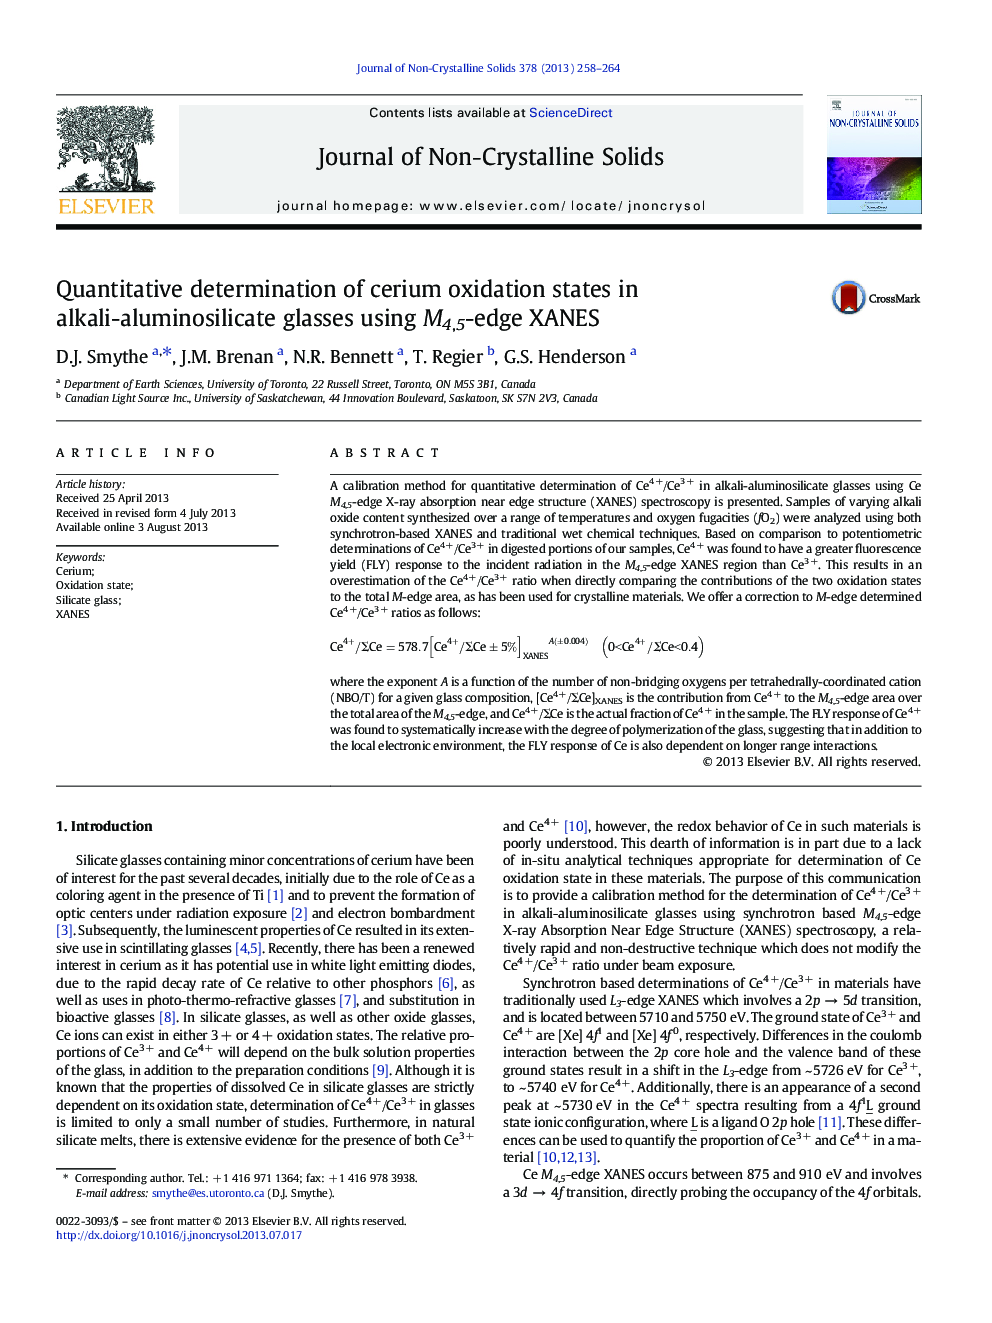 Quantitative determination of cerium oxidation states in alkali-aluminosilicate glasses using M4,5-edge XANES